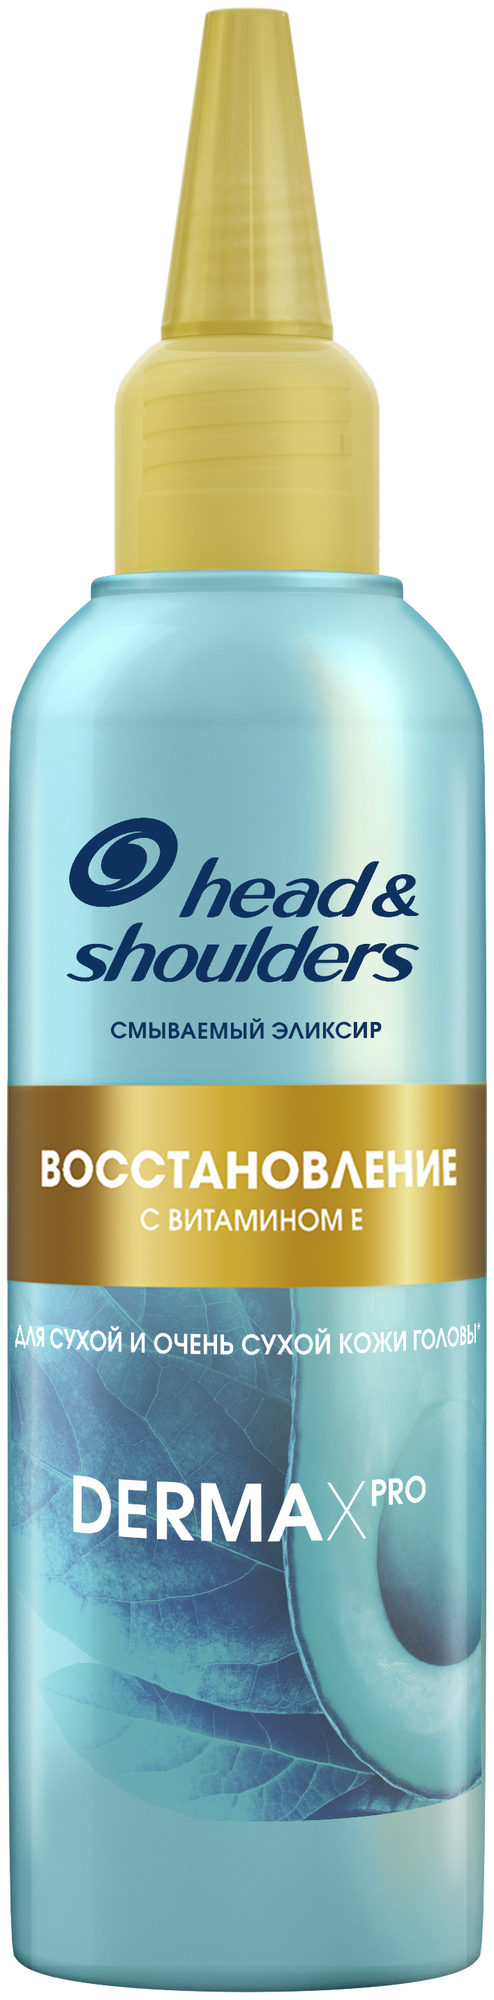 Head & Shoulders эликсир Derma X Pro Восстановление, 145 мл, бутылка